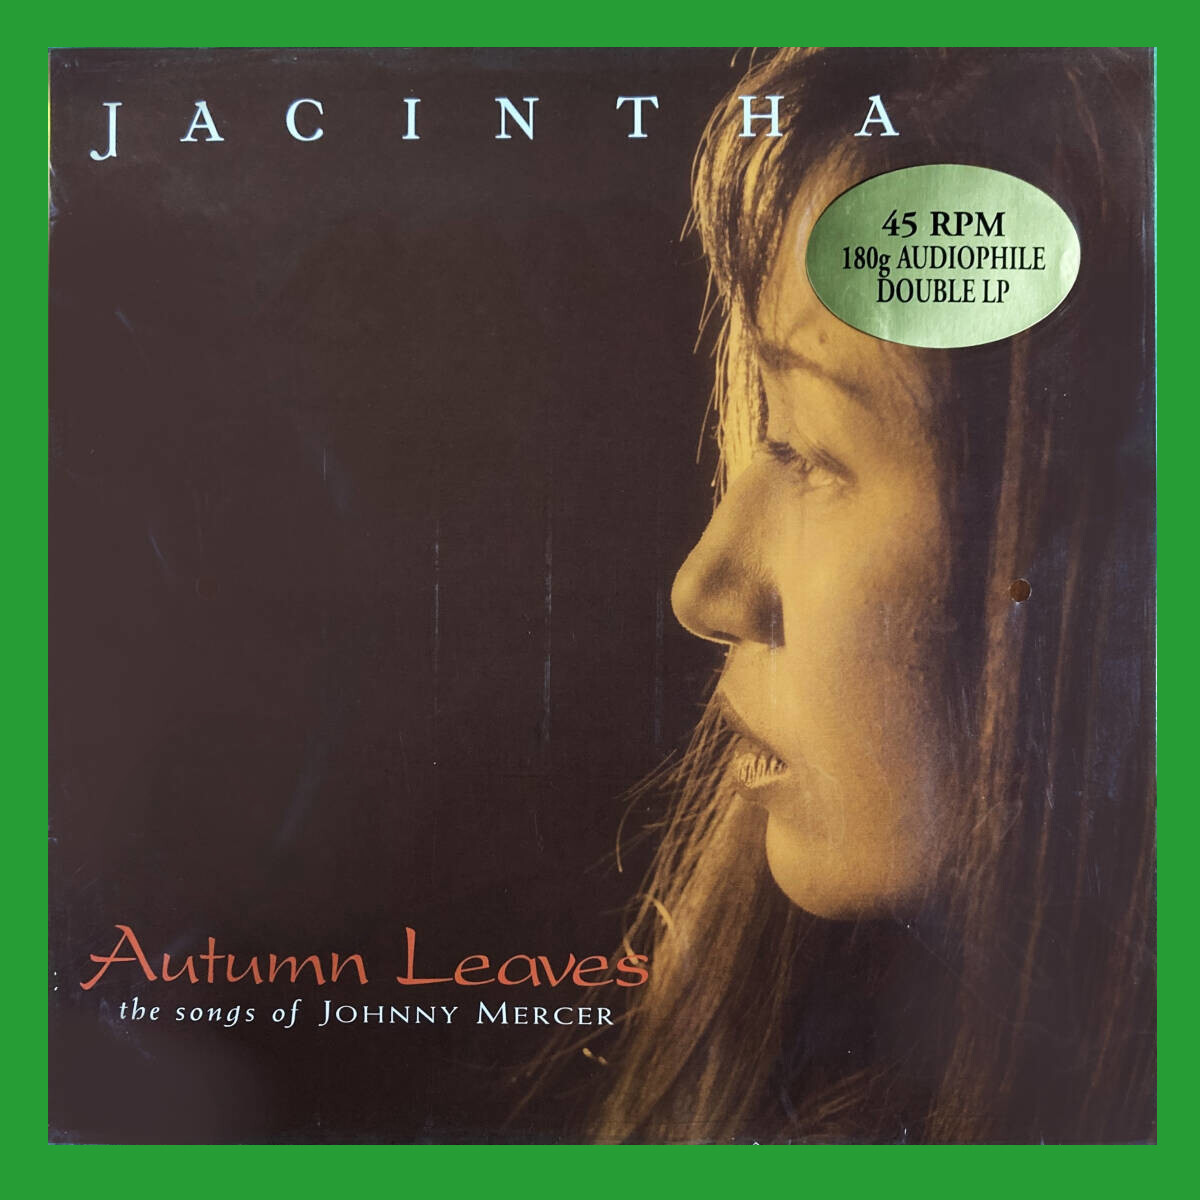 未開封 入手激難 2LP 45回転 ジャシンタ 枯葉 極上の女性ヴォーカル 超優秀録音 高音質盤 希少完売品 Jacintha Autumn Leavesの画像1